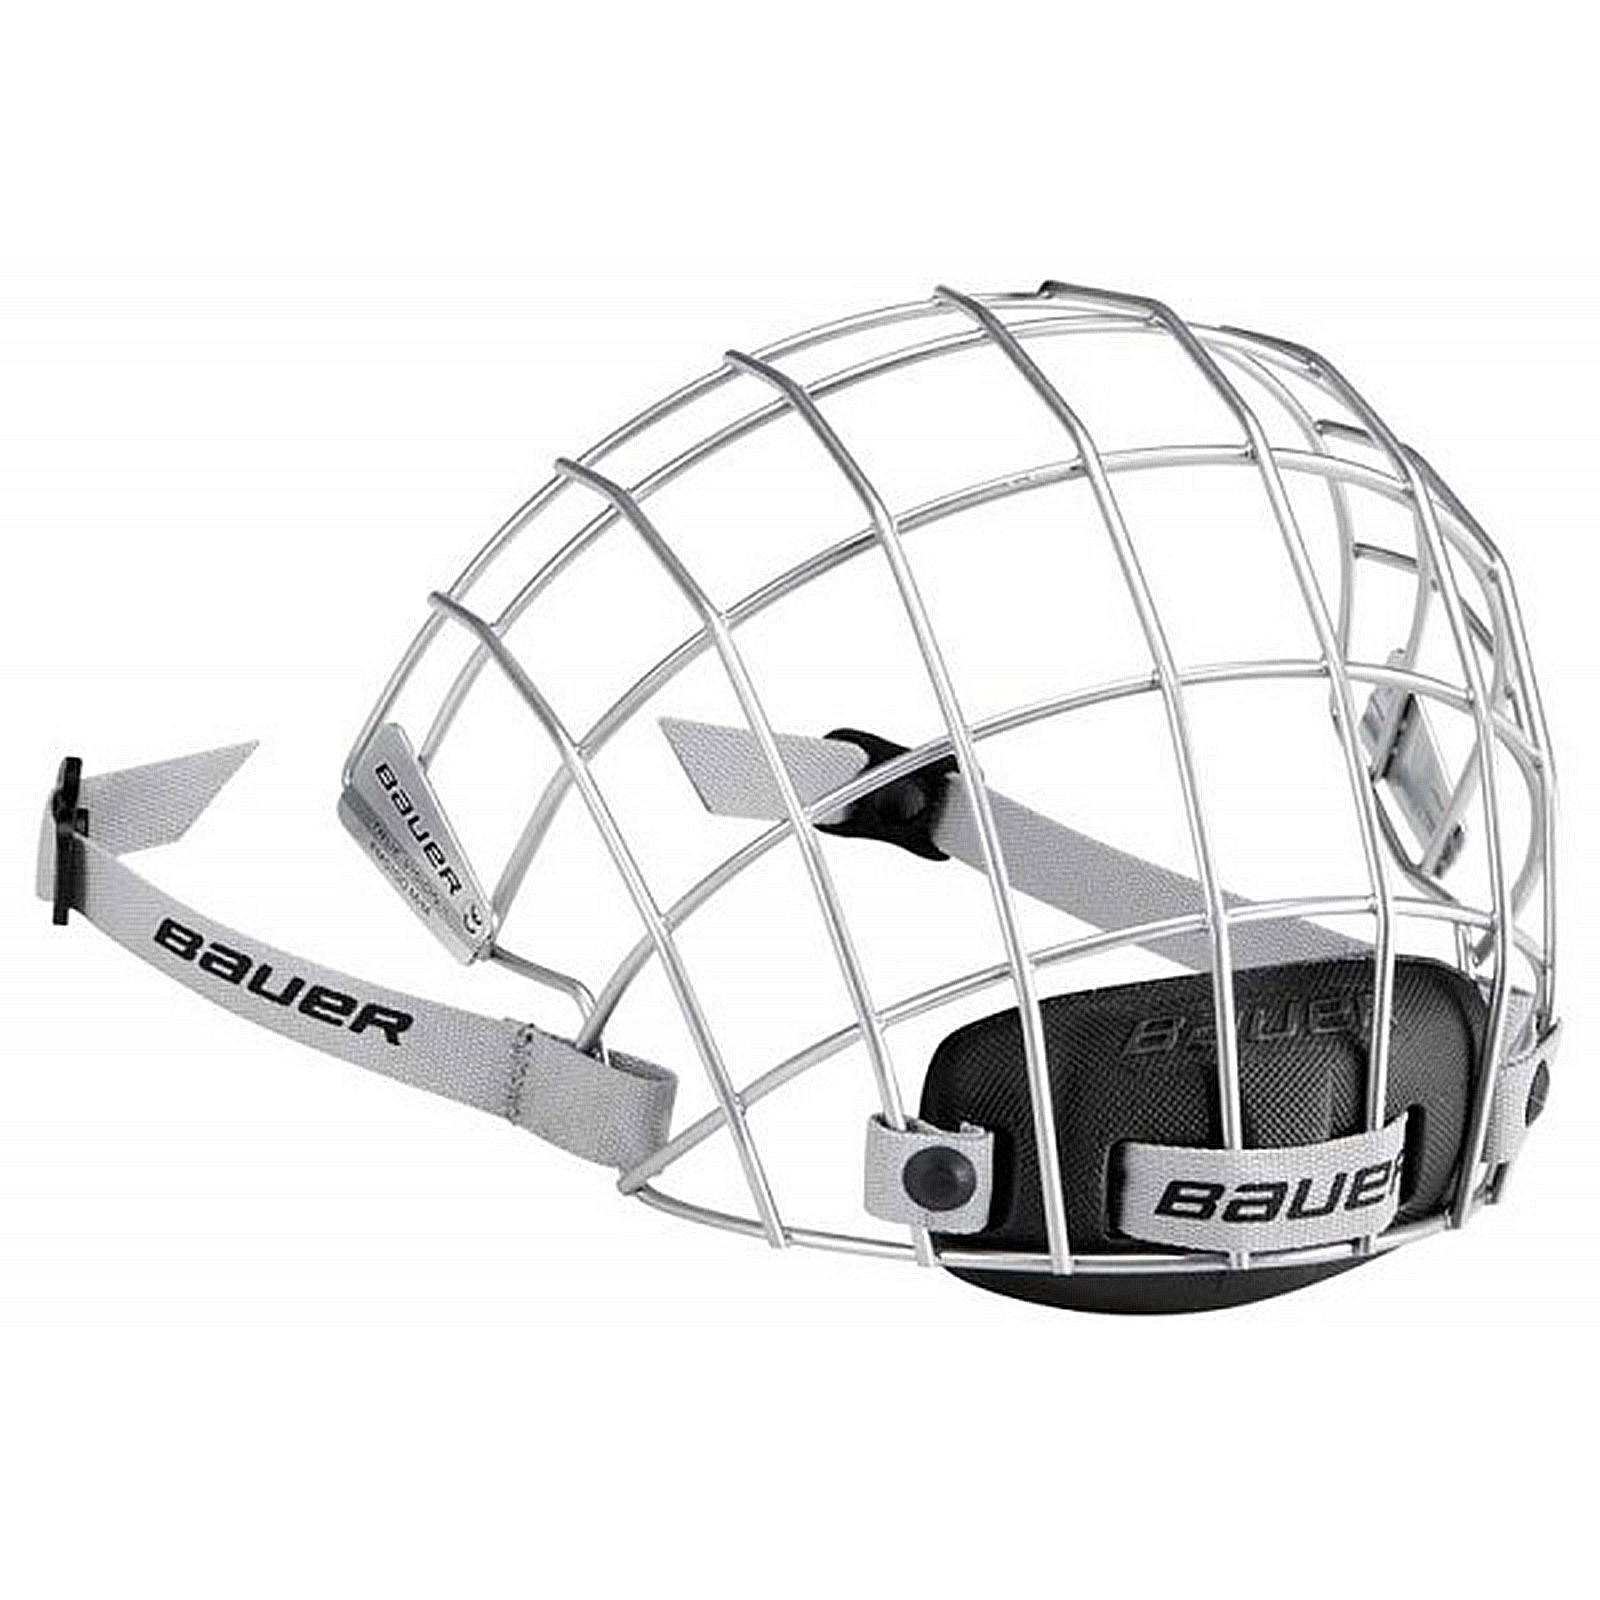 Маска хоккейная bauer. Маска визор Бауэр. Маска для шлема Bauer 2100 Facemask SR. Хоккейный шлем Bauer 5100. Хоккейная маска Бауэр.